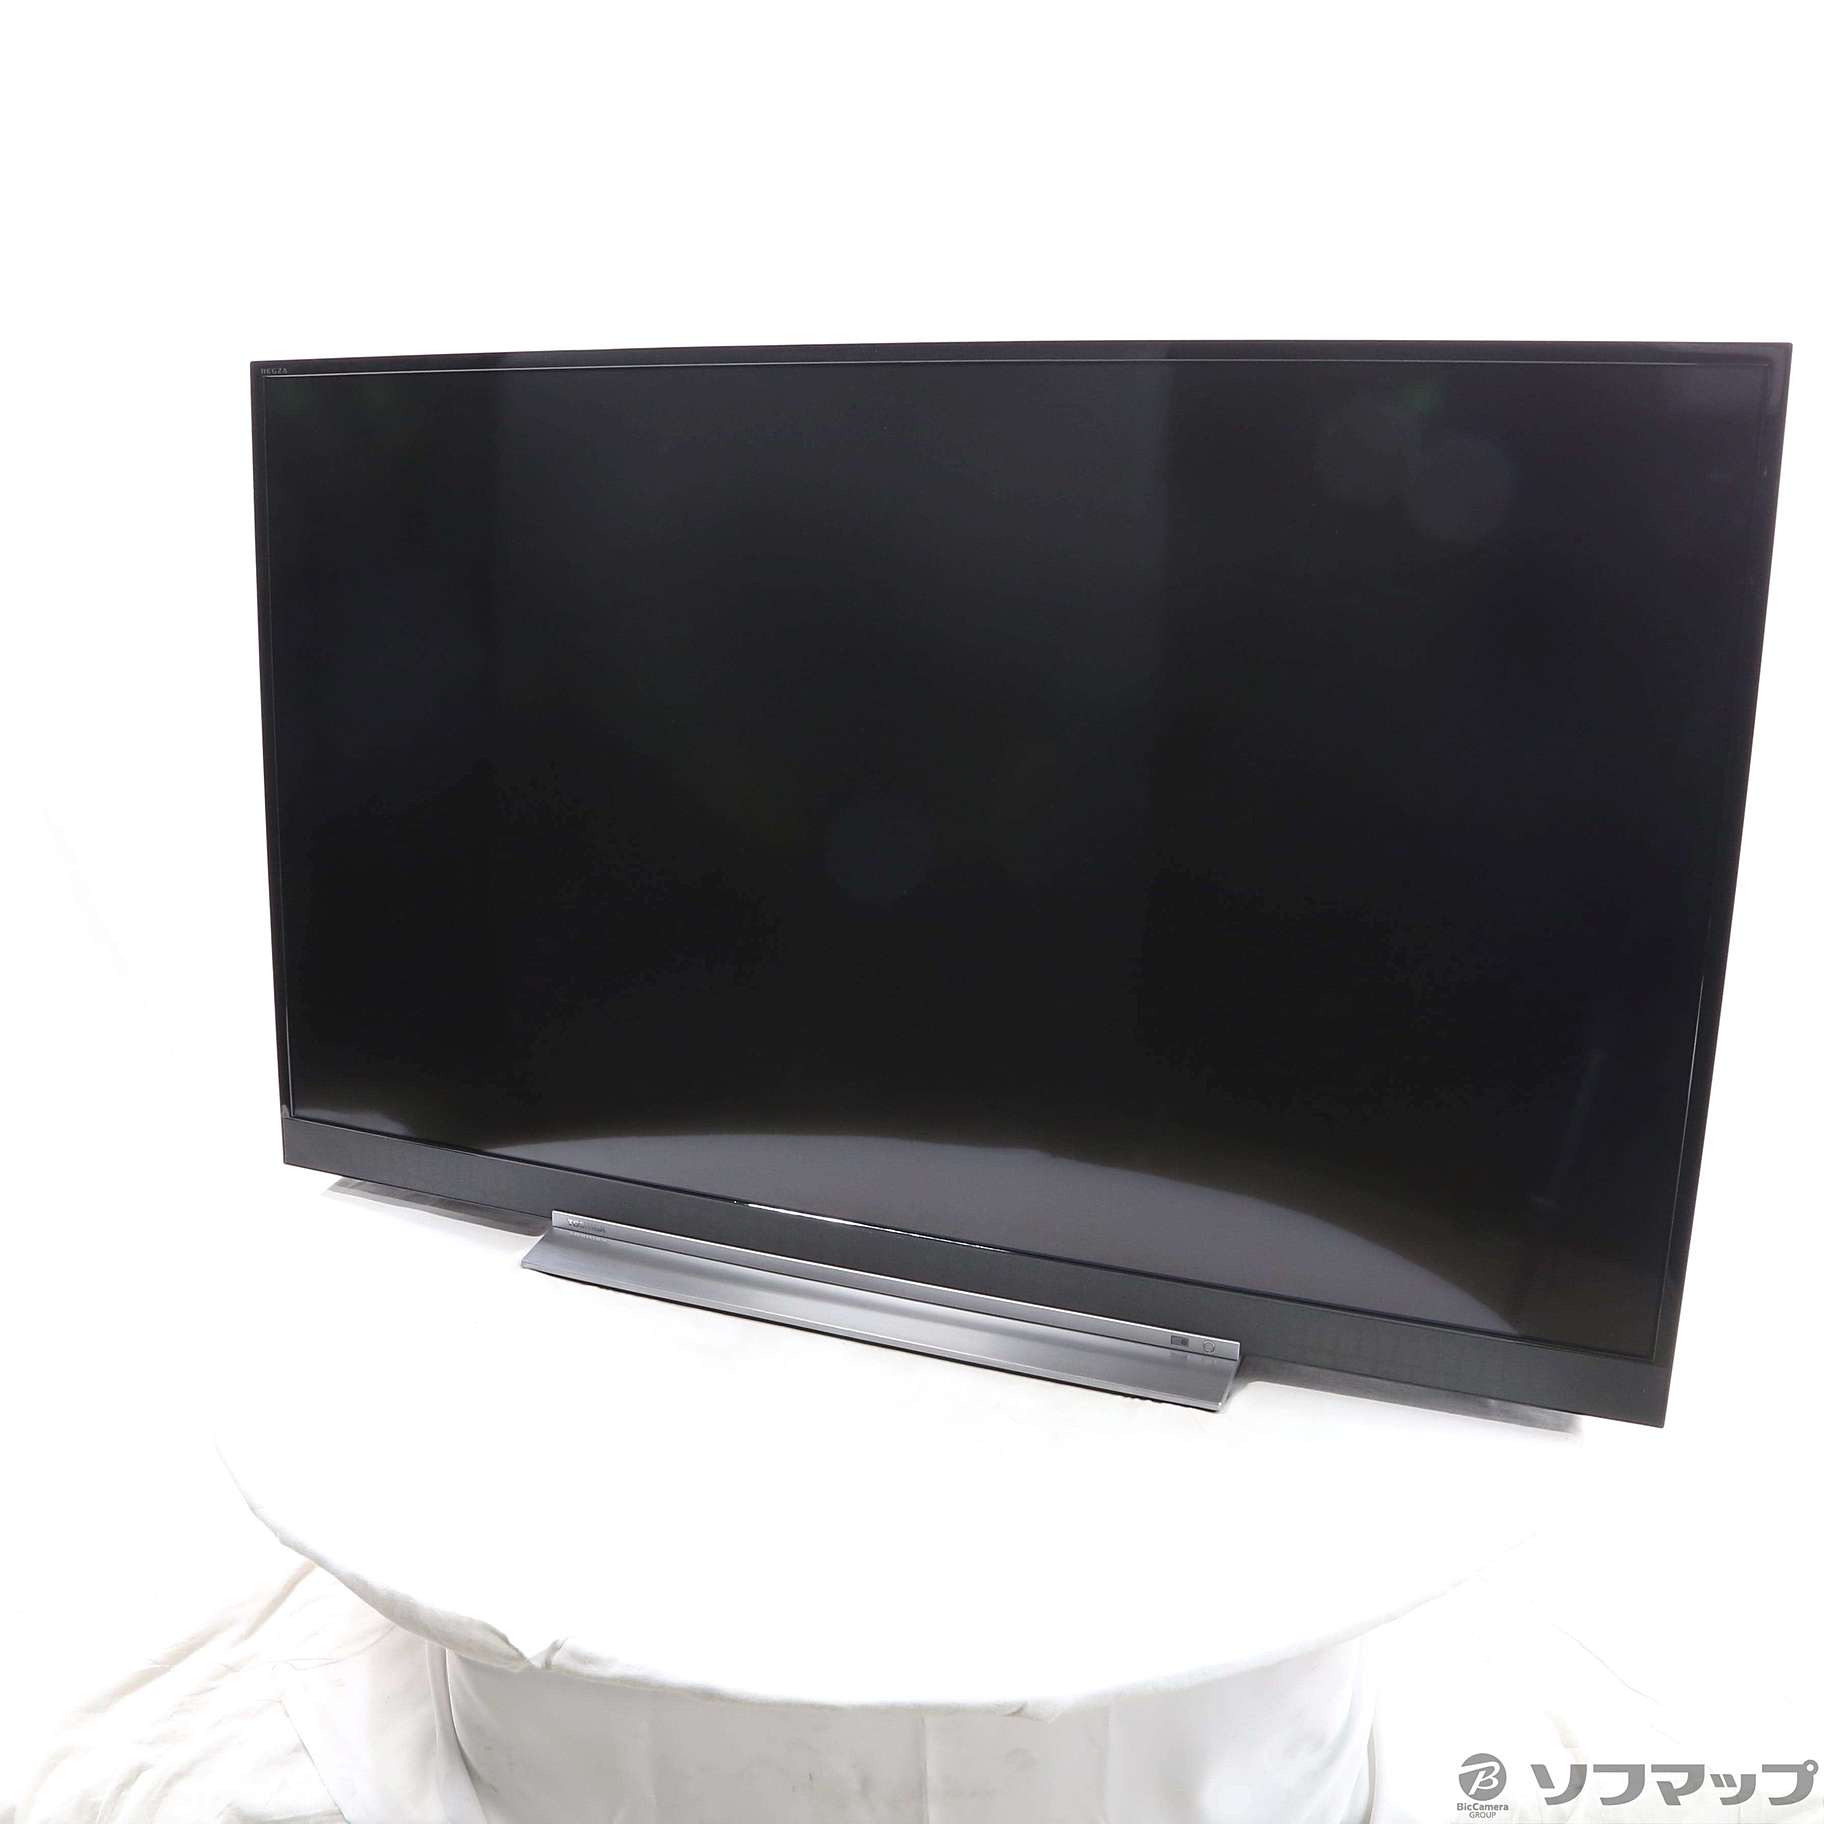 東芝 49BZ710X 4K 液晶テレビ 49インチ - テレビ/映像機器